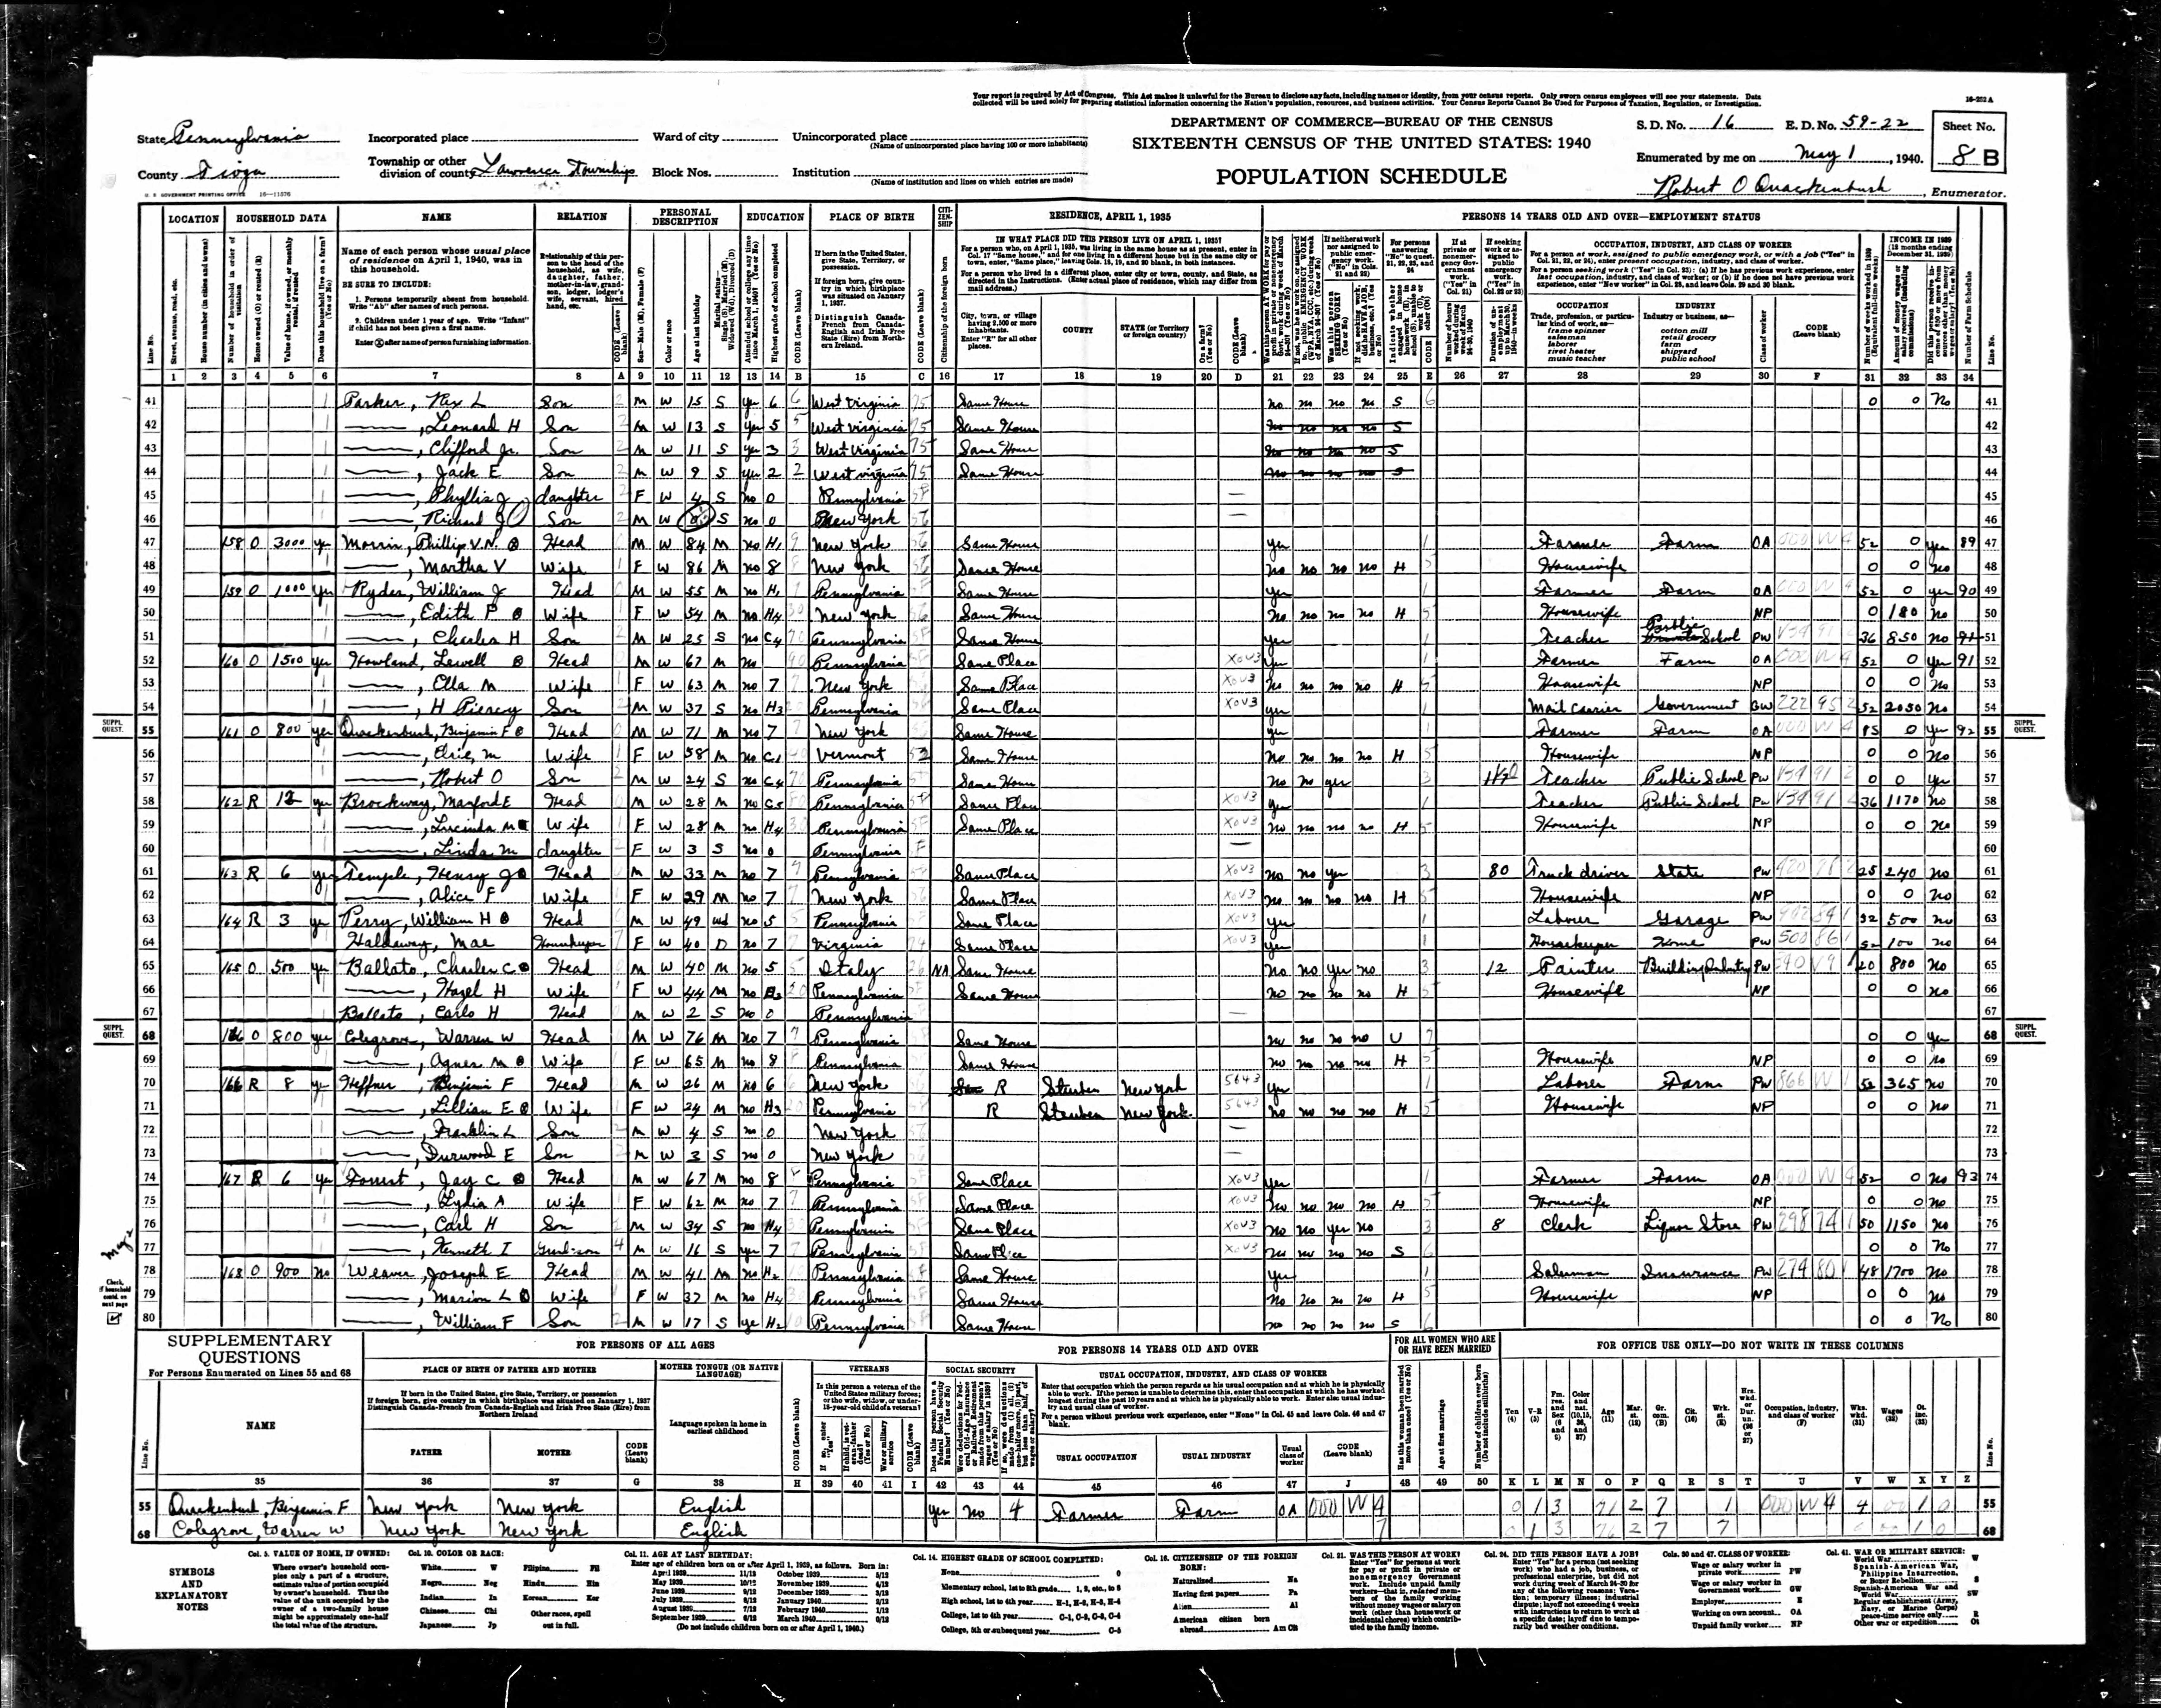 1940 Census, Rex L. Parker, line 41